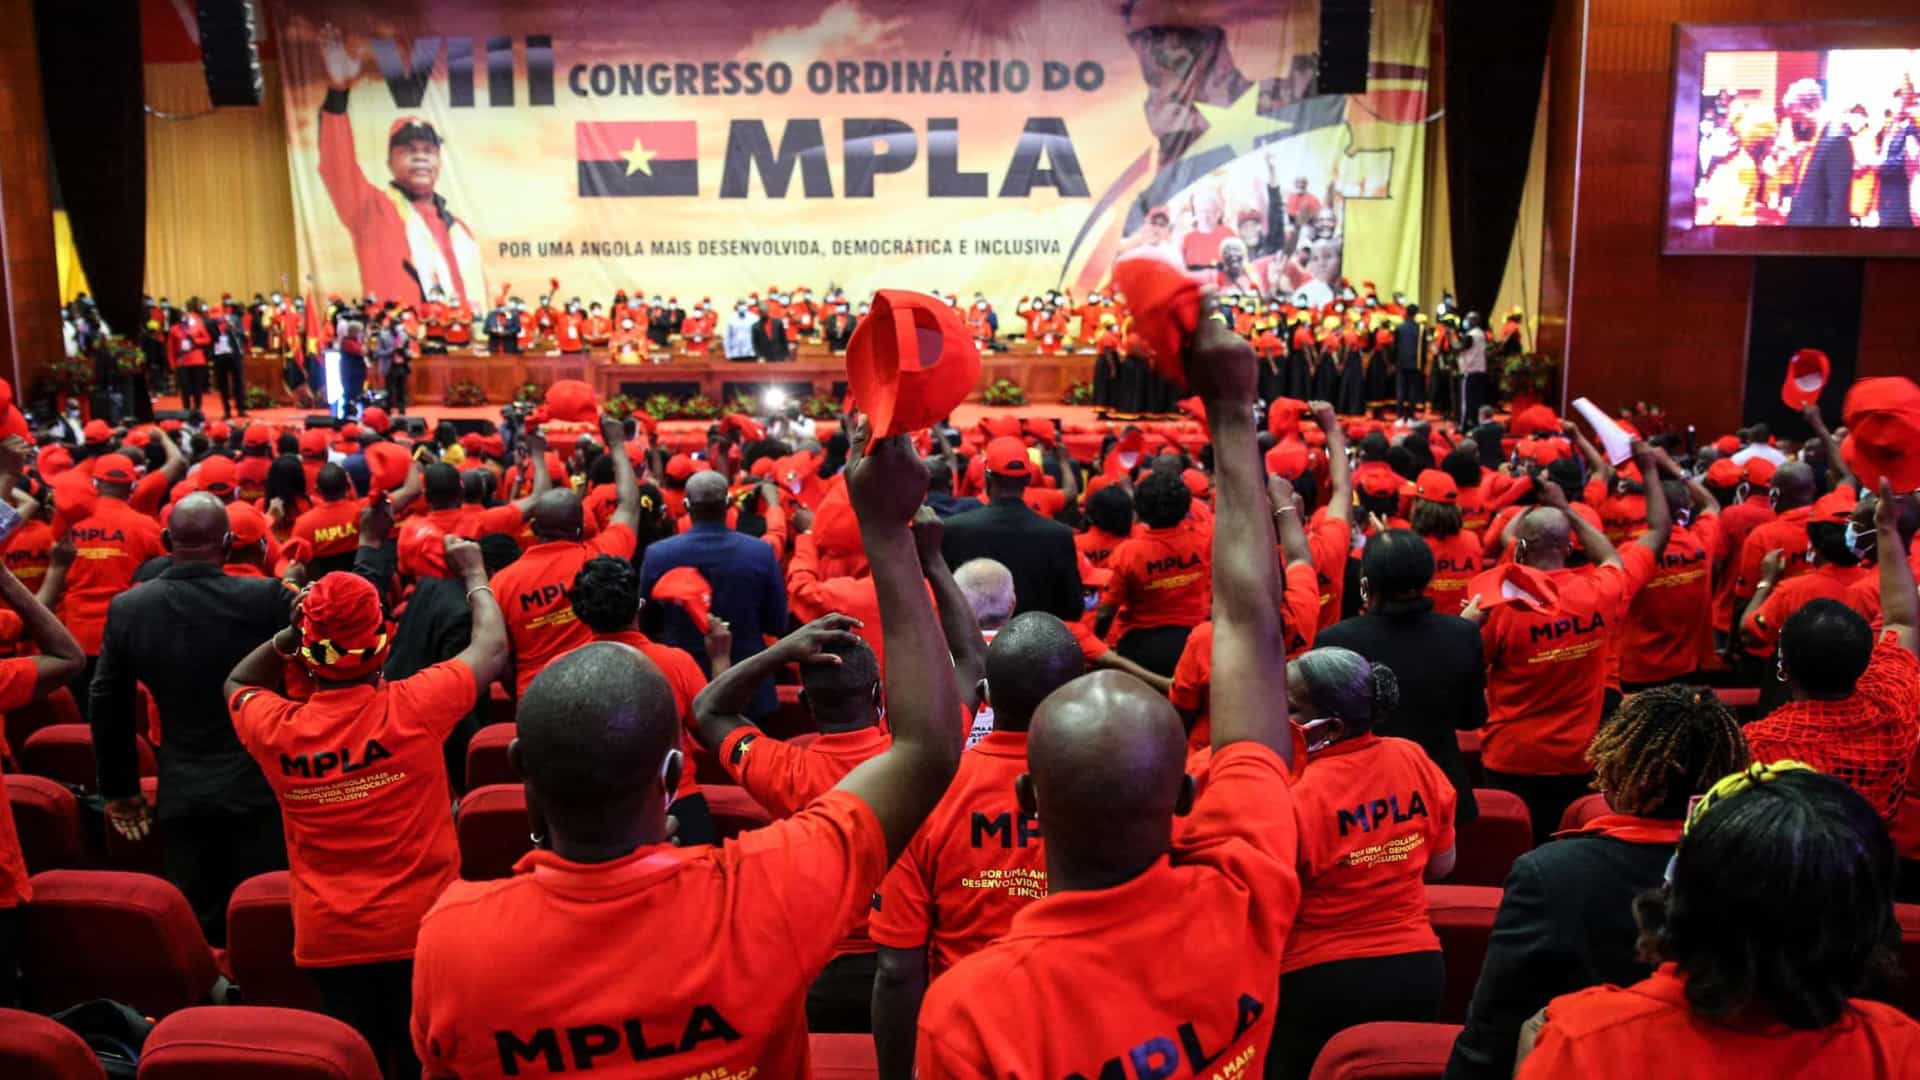 Líder do MPLA acusa adversários de campanha de descredibilização